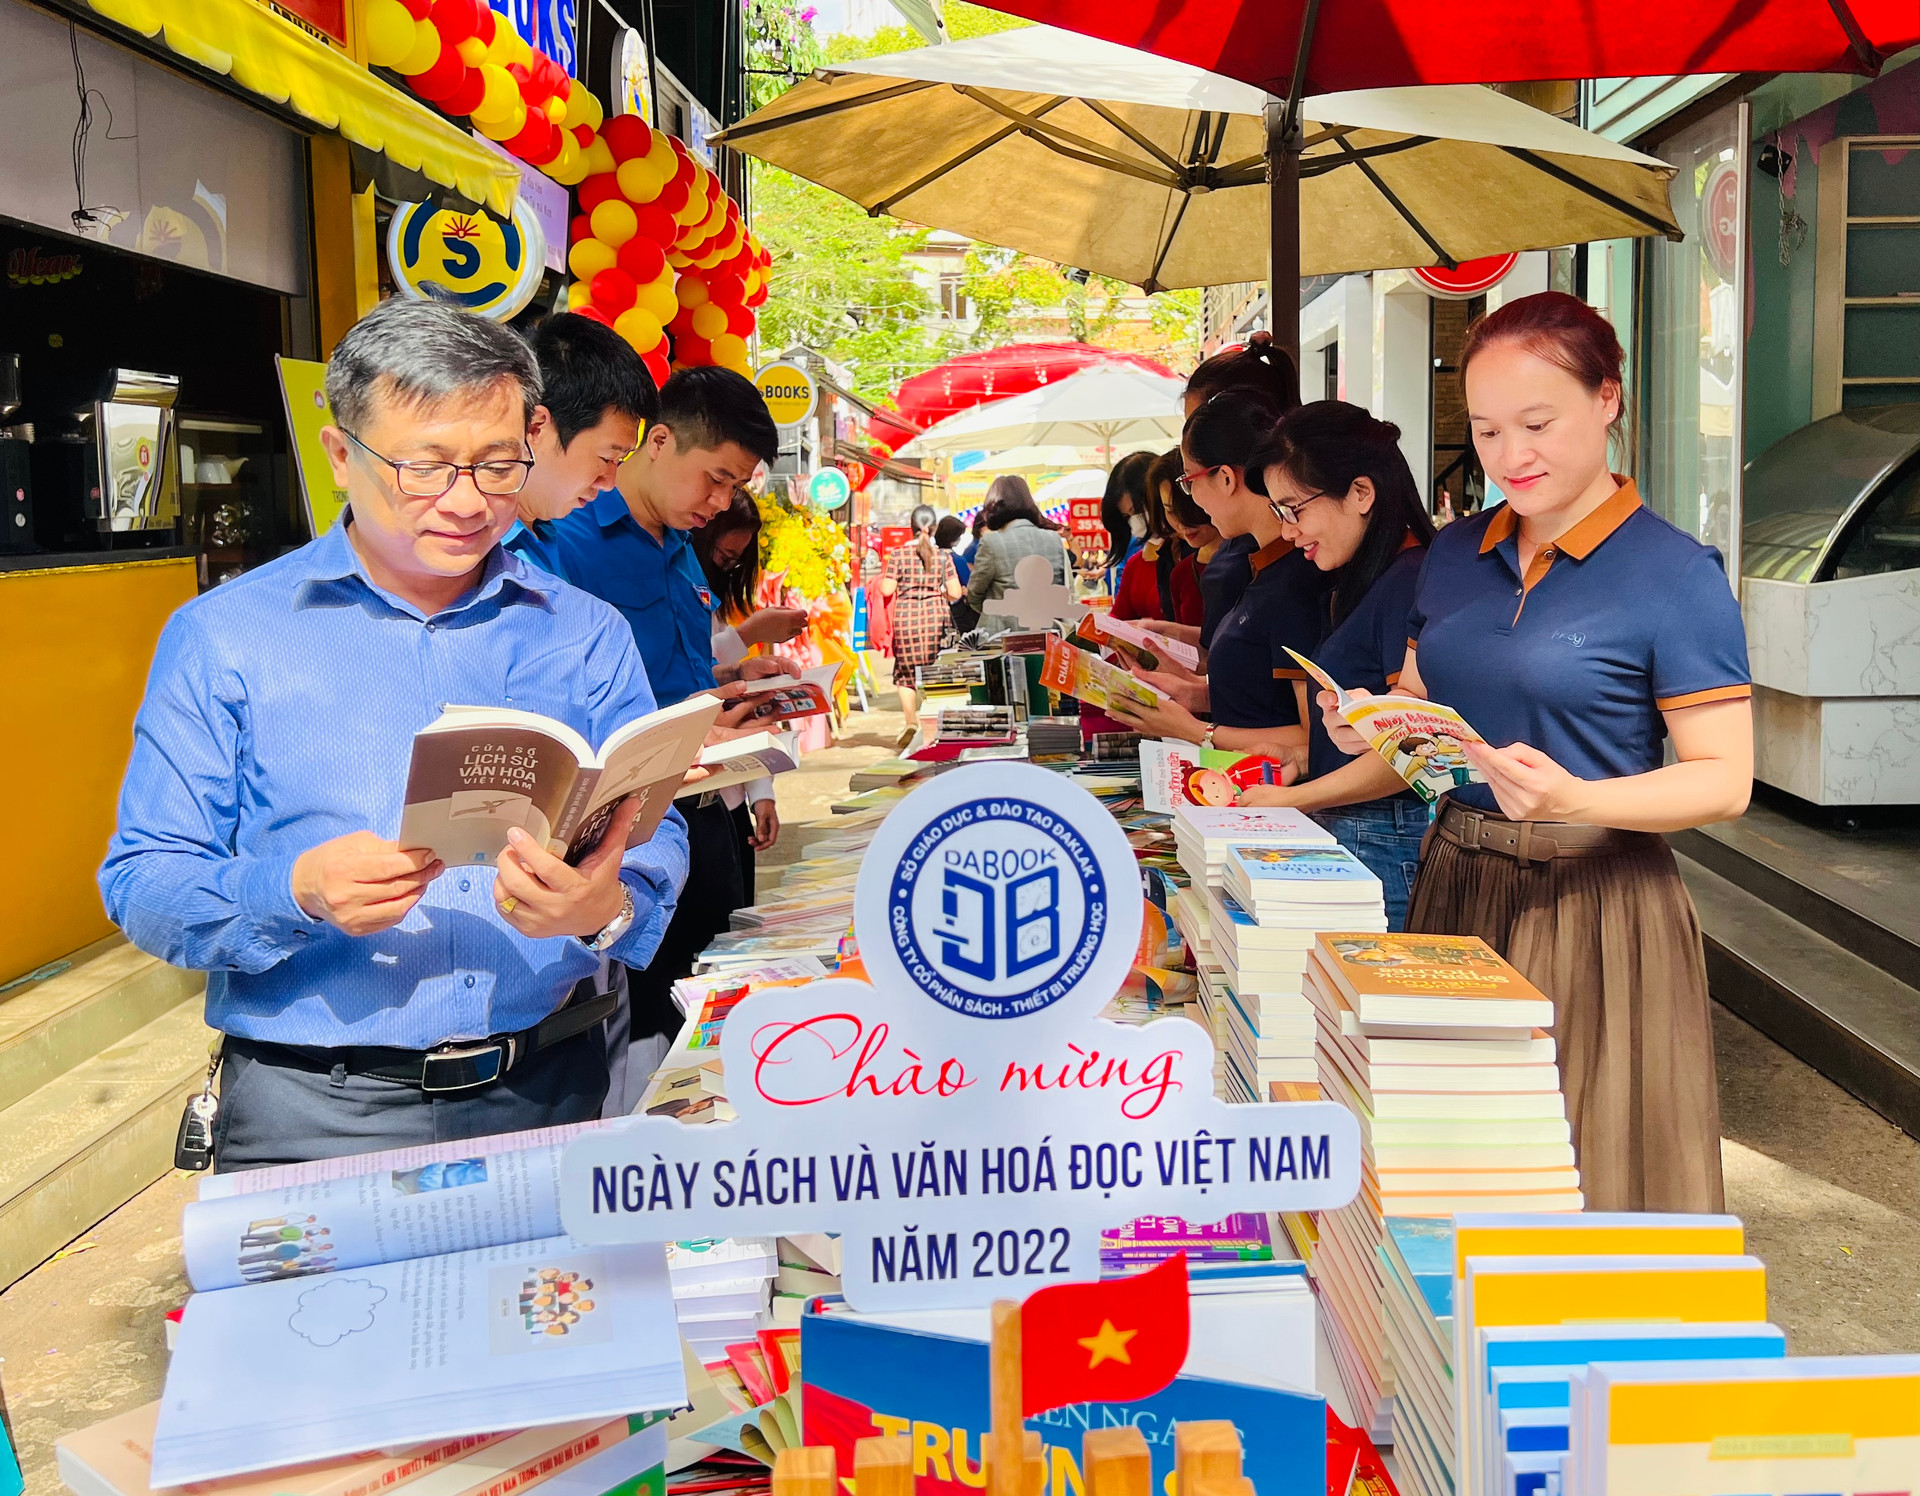 Ngày Sách và Văn hóa đọc năm 2022 tại Đắk Lắk sẽ góp phần tôn vinh văn hóa đọc.